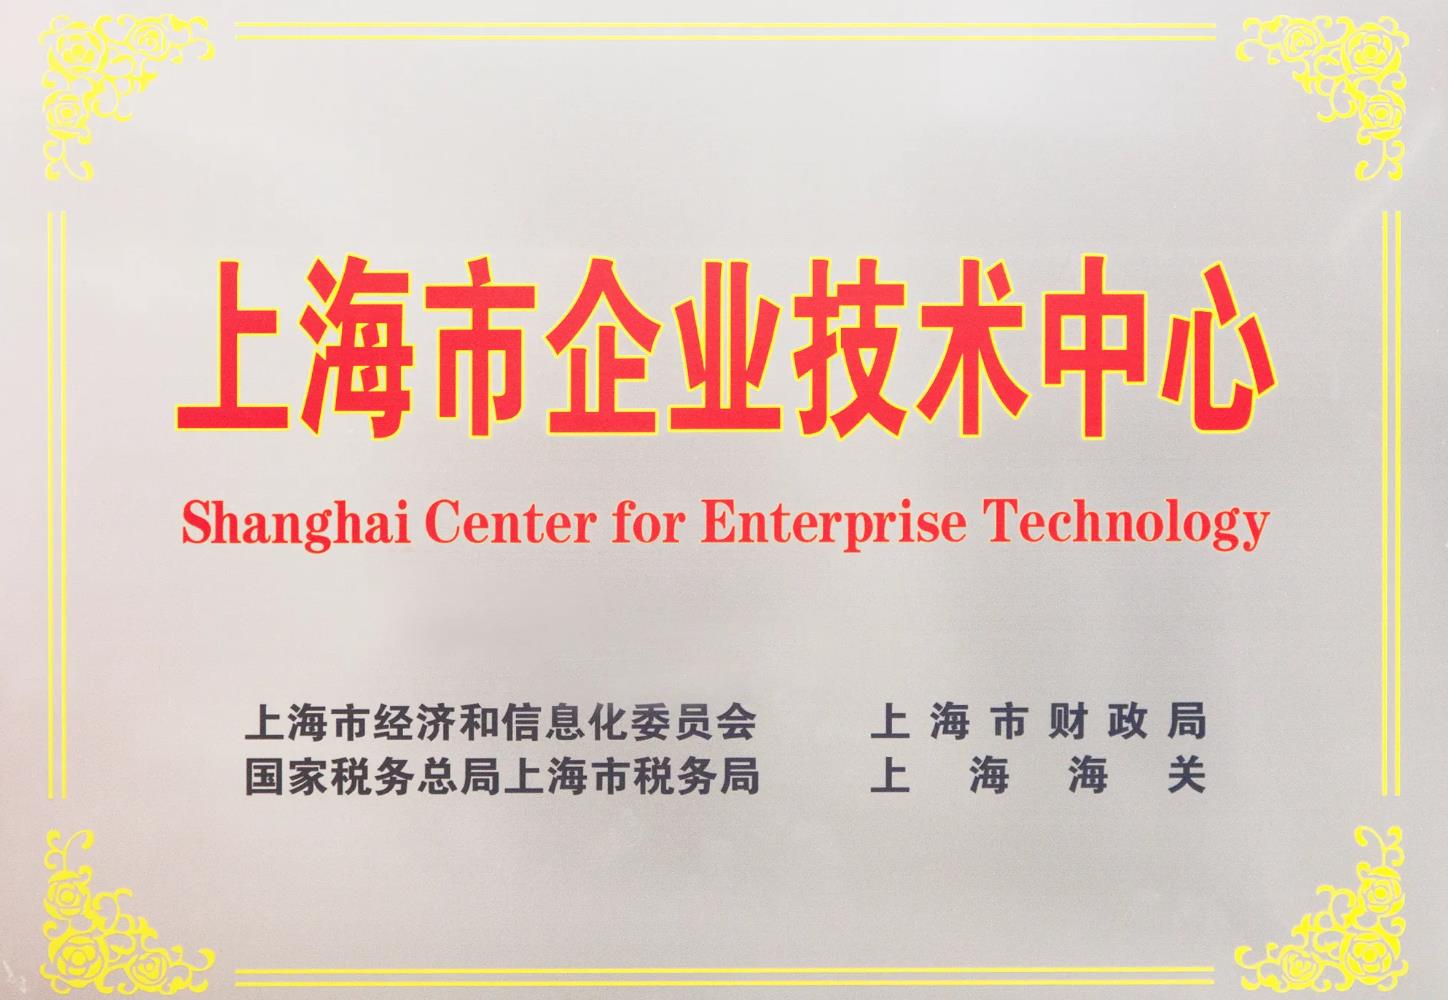 喜讯! 金沙贵宾检测中心研发中心被成功认定为 上海市企业技术中心